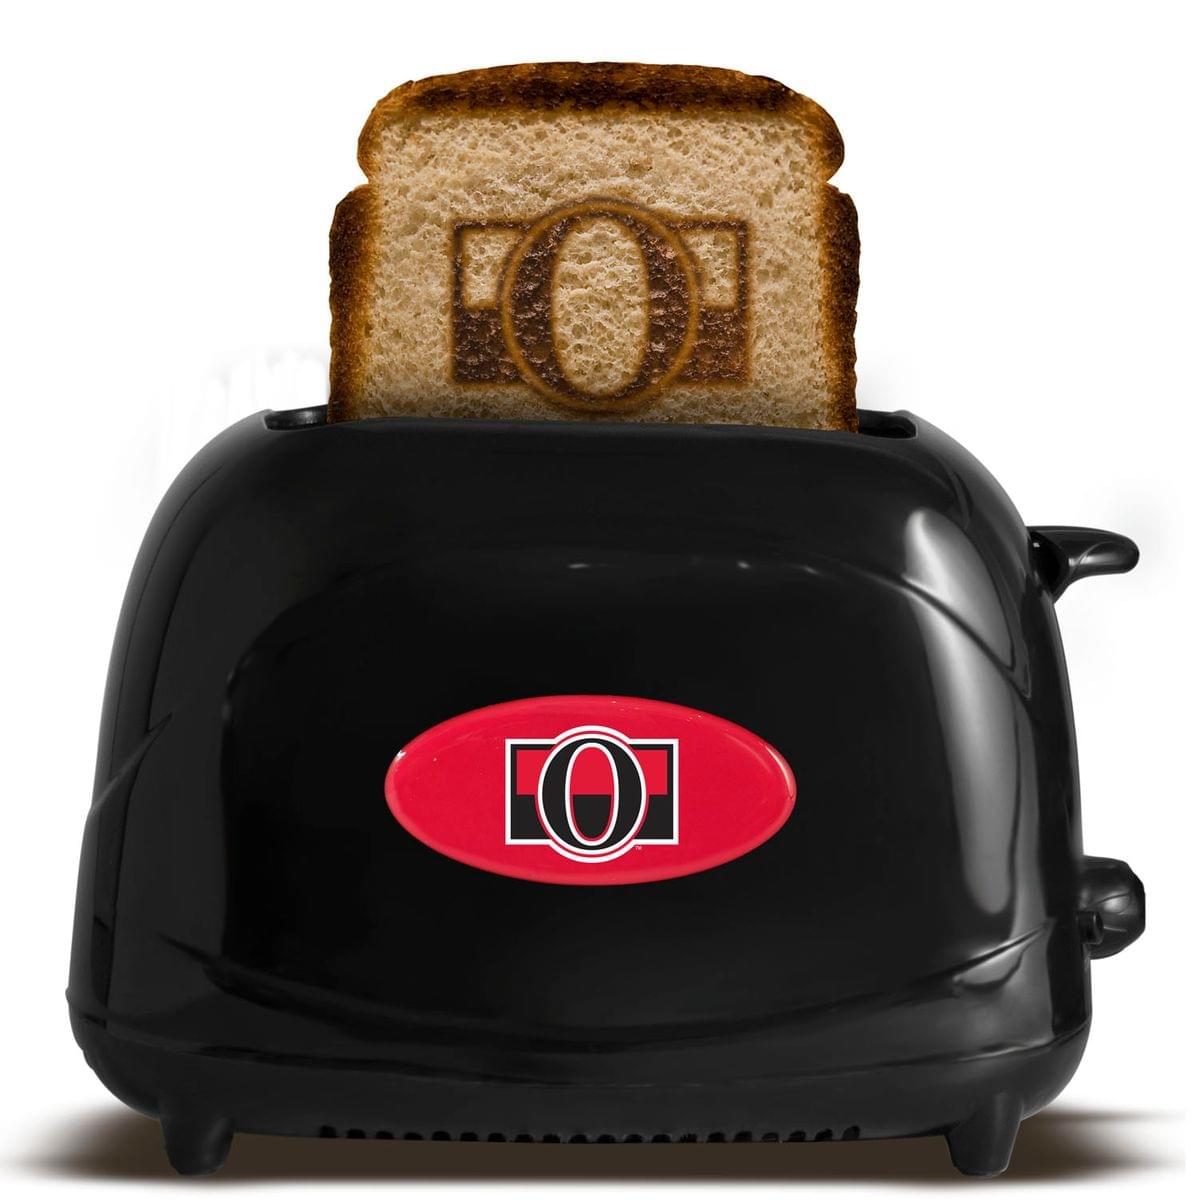 Ottawa Senators NHL ProToast Elite Toaster